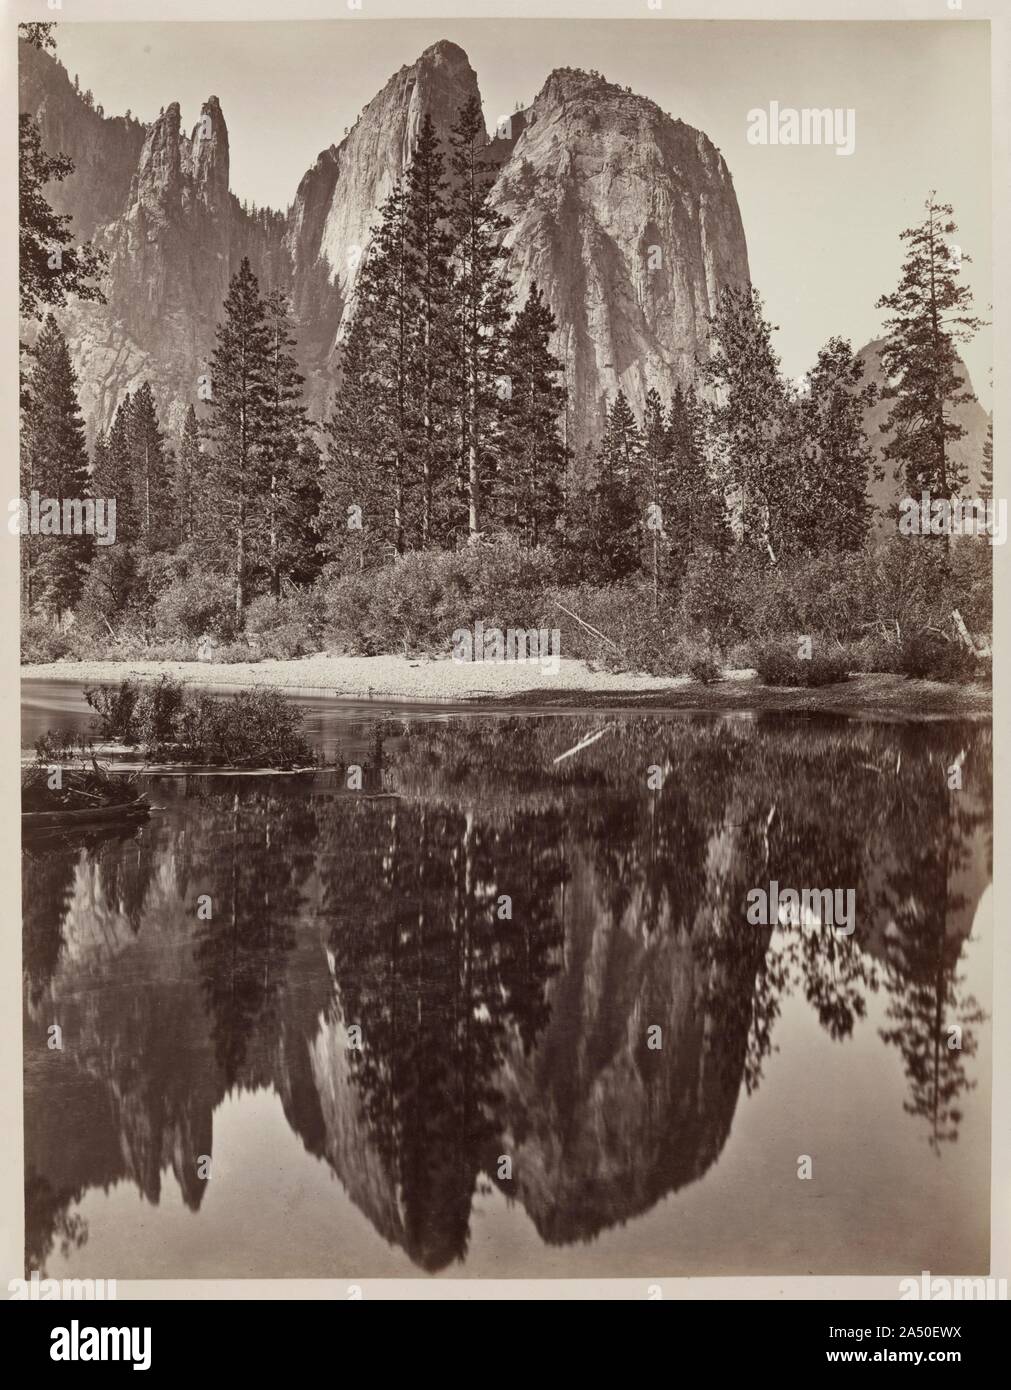 Cathedral Rocks e riflessioni e il Parco Nazionale di Yosemite, 1864. Nel 1859, Charles L. Weed realizzato le prime fotografie di Yosemite Region. Utilizzando il collodio umido processo, ha prodotto 40 stereoviews e una ventina di grandi dimensioni (10 x 14 pollici) negativi di vetro. Il suo pionieristico di fotografie ha informato i futuri visitatori e artisti della regione splendori panoramici. Circa cinque anni più tardi, nel 1864, tornò a creare la sua notevole mammoth piastra opinioni (circa 17 x 22 pollici) della valle. Questa immagine di Cathedral Rocks è fra i migliori esempi di erbaccia è la sua capacità di combinare sublime oggetto di osservazione. Wi Foto Stock